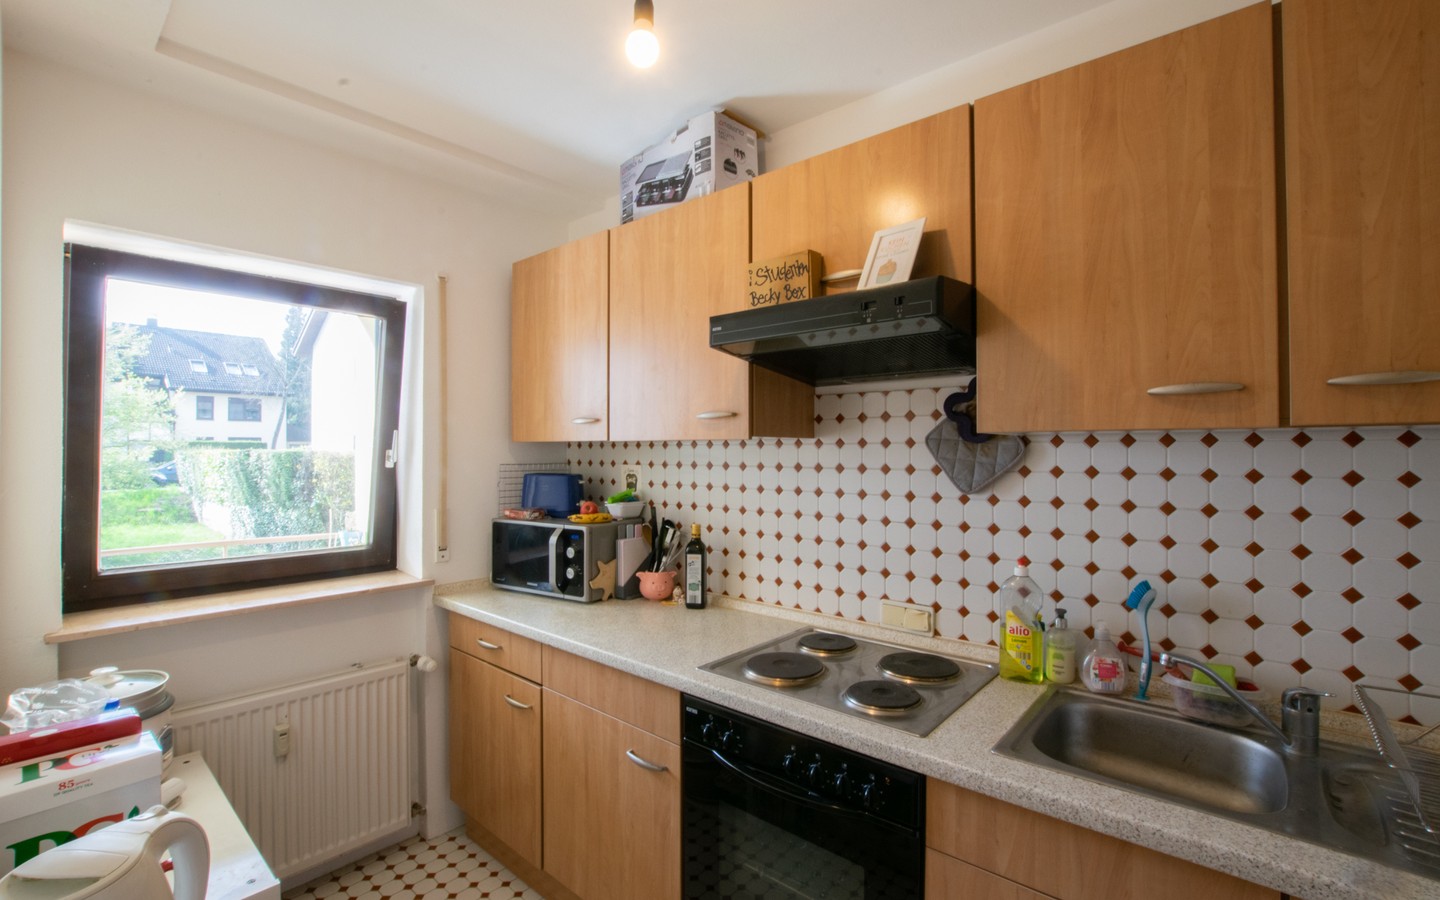 Küche - HD-Handschuhsheim: Großzügige Einzimmerwohnung mit Loggia in begehrter Wohnlage!